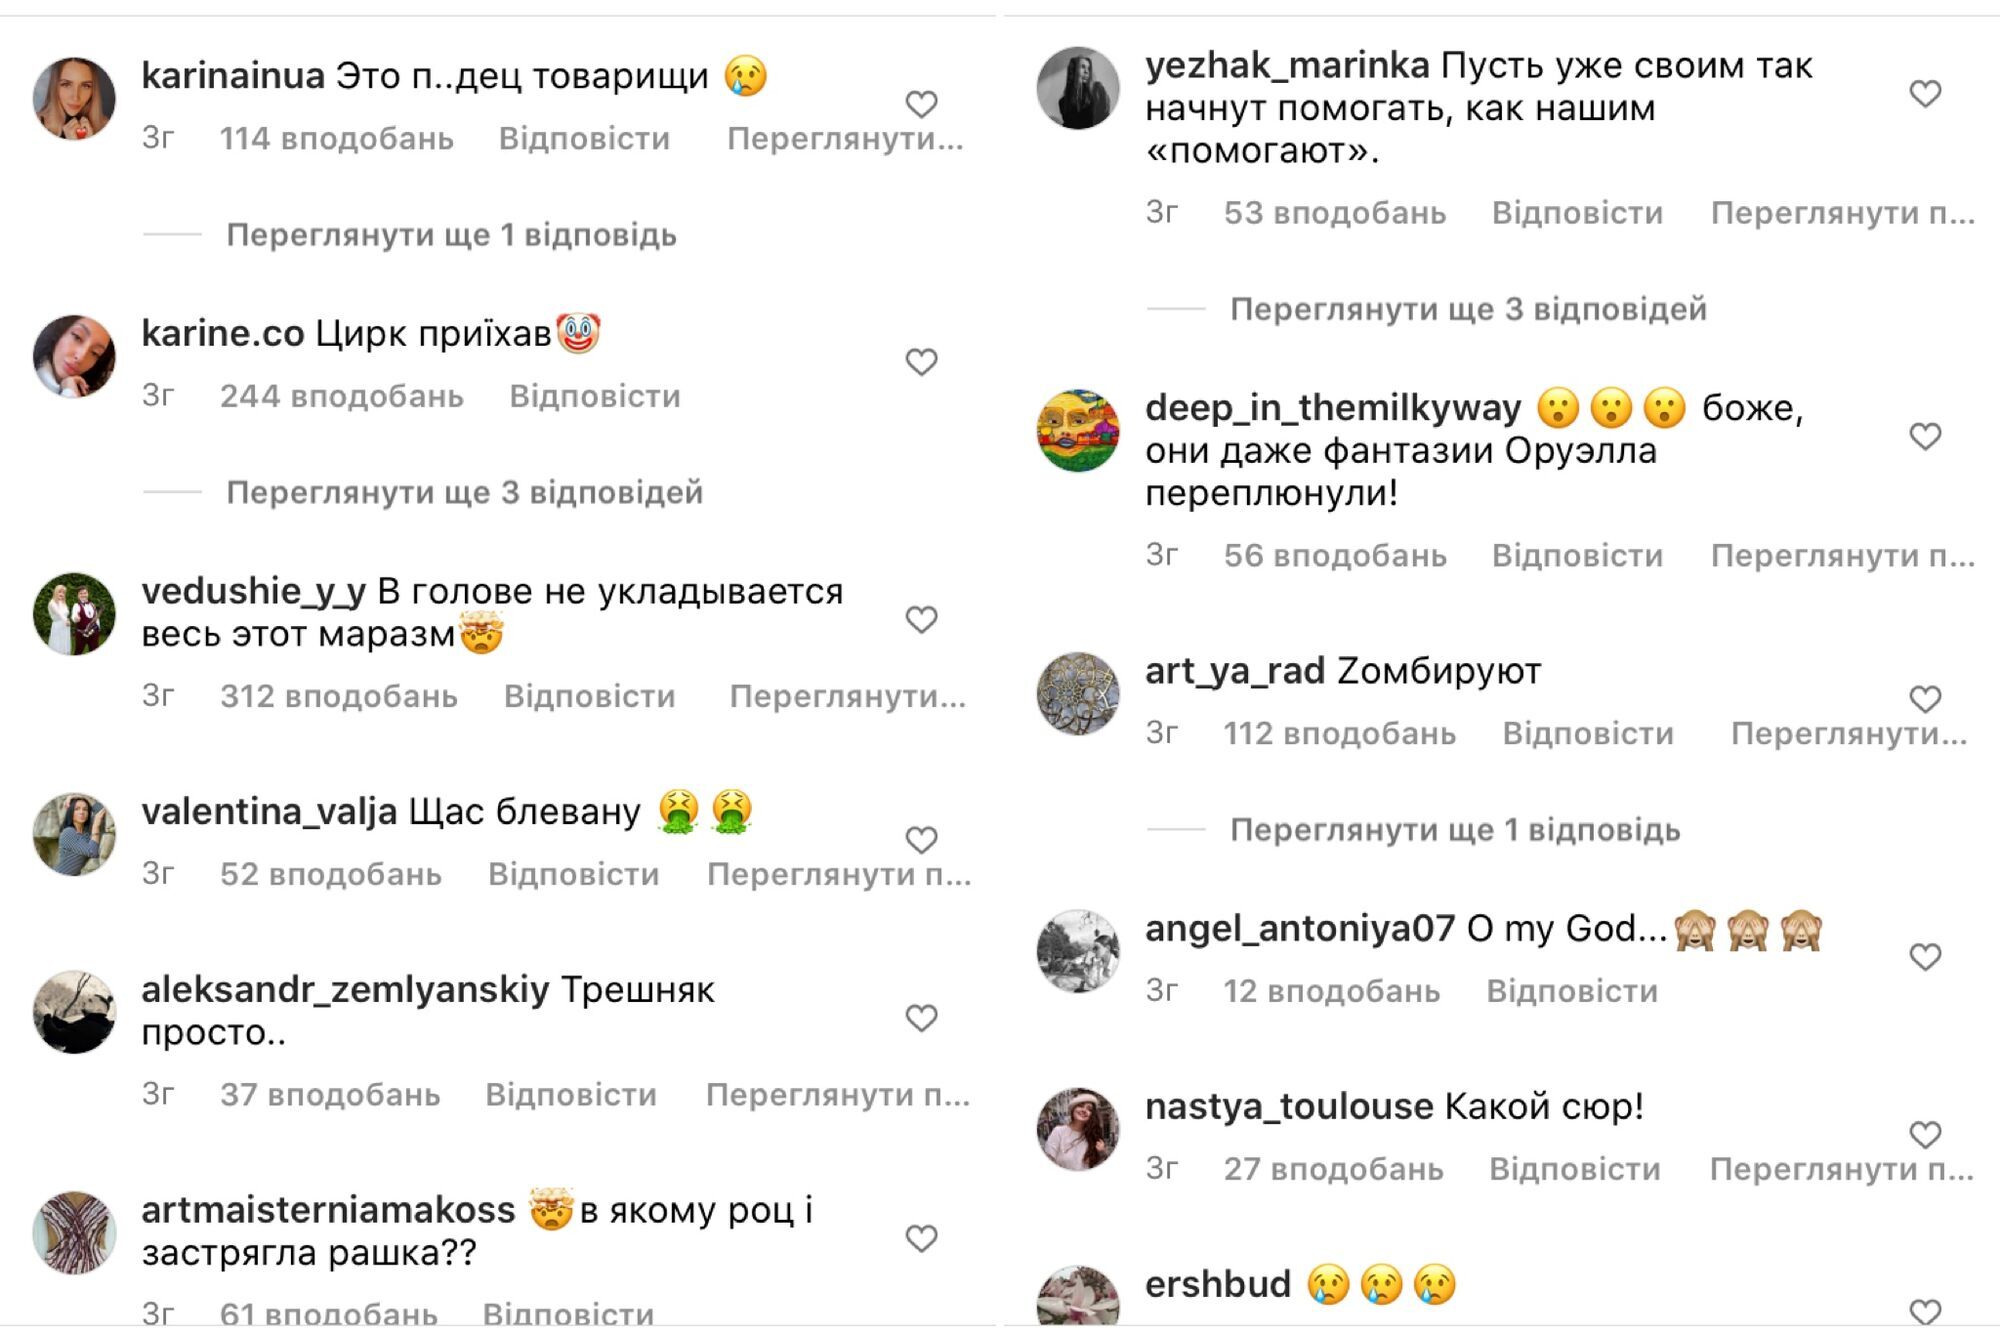 Комментарии под постом Беднякова